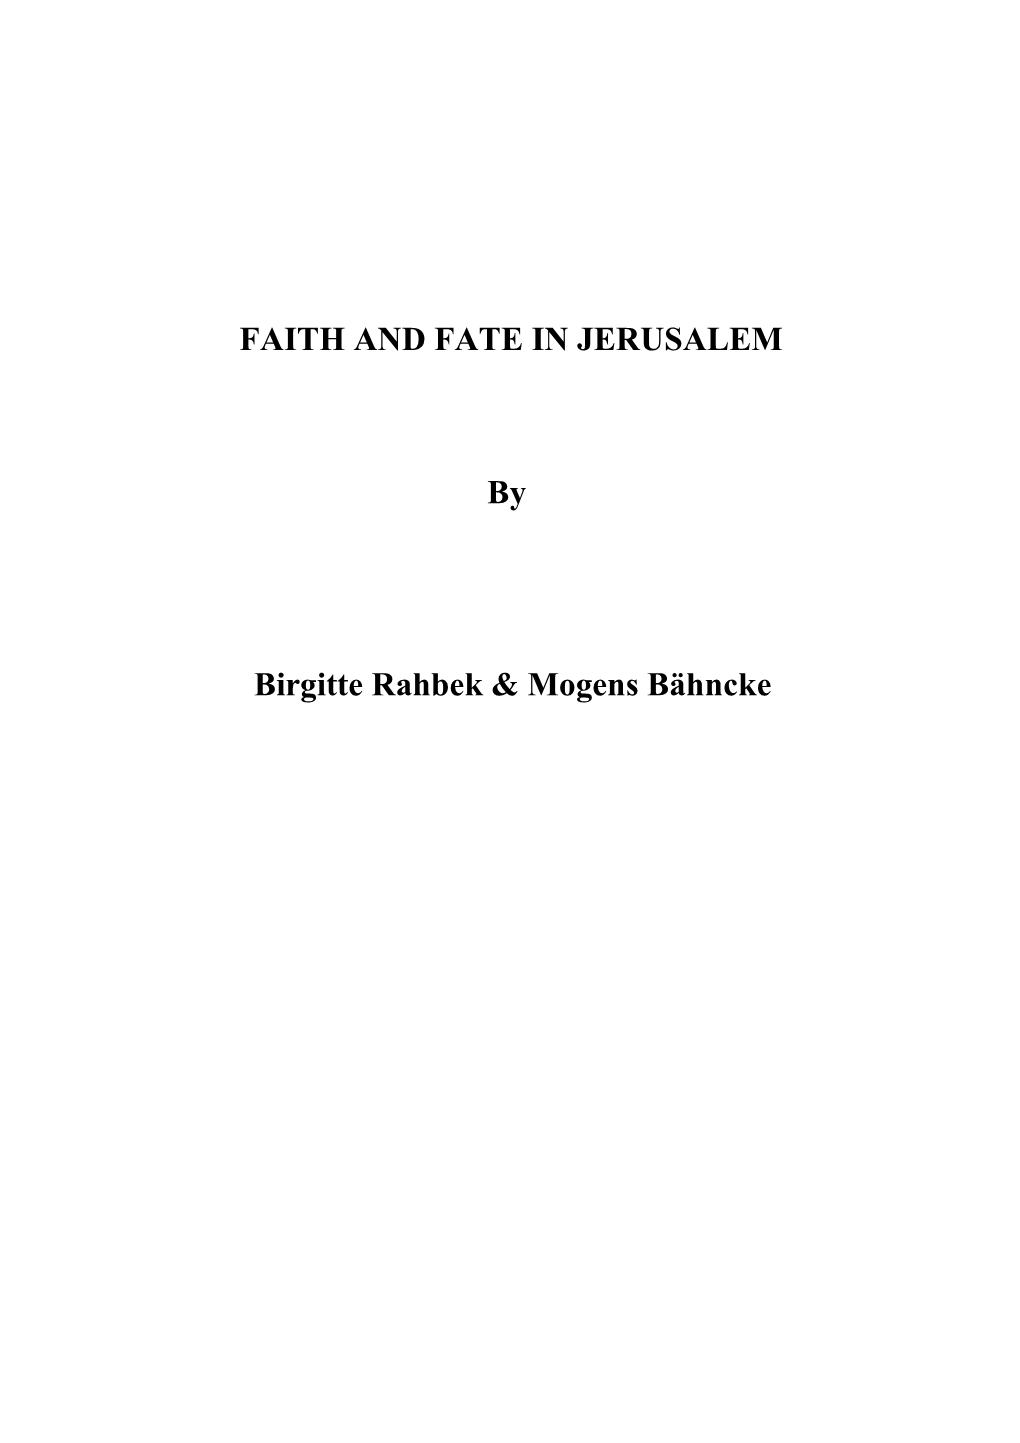 FAITH and FATE in JERUSALEM by Birgitte Rahbek & Mogens Bähncke